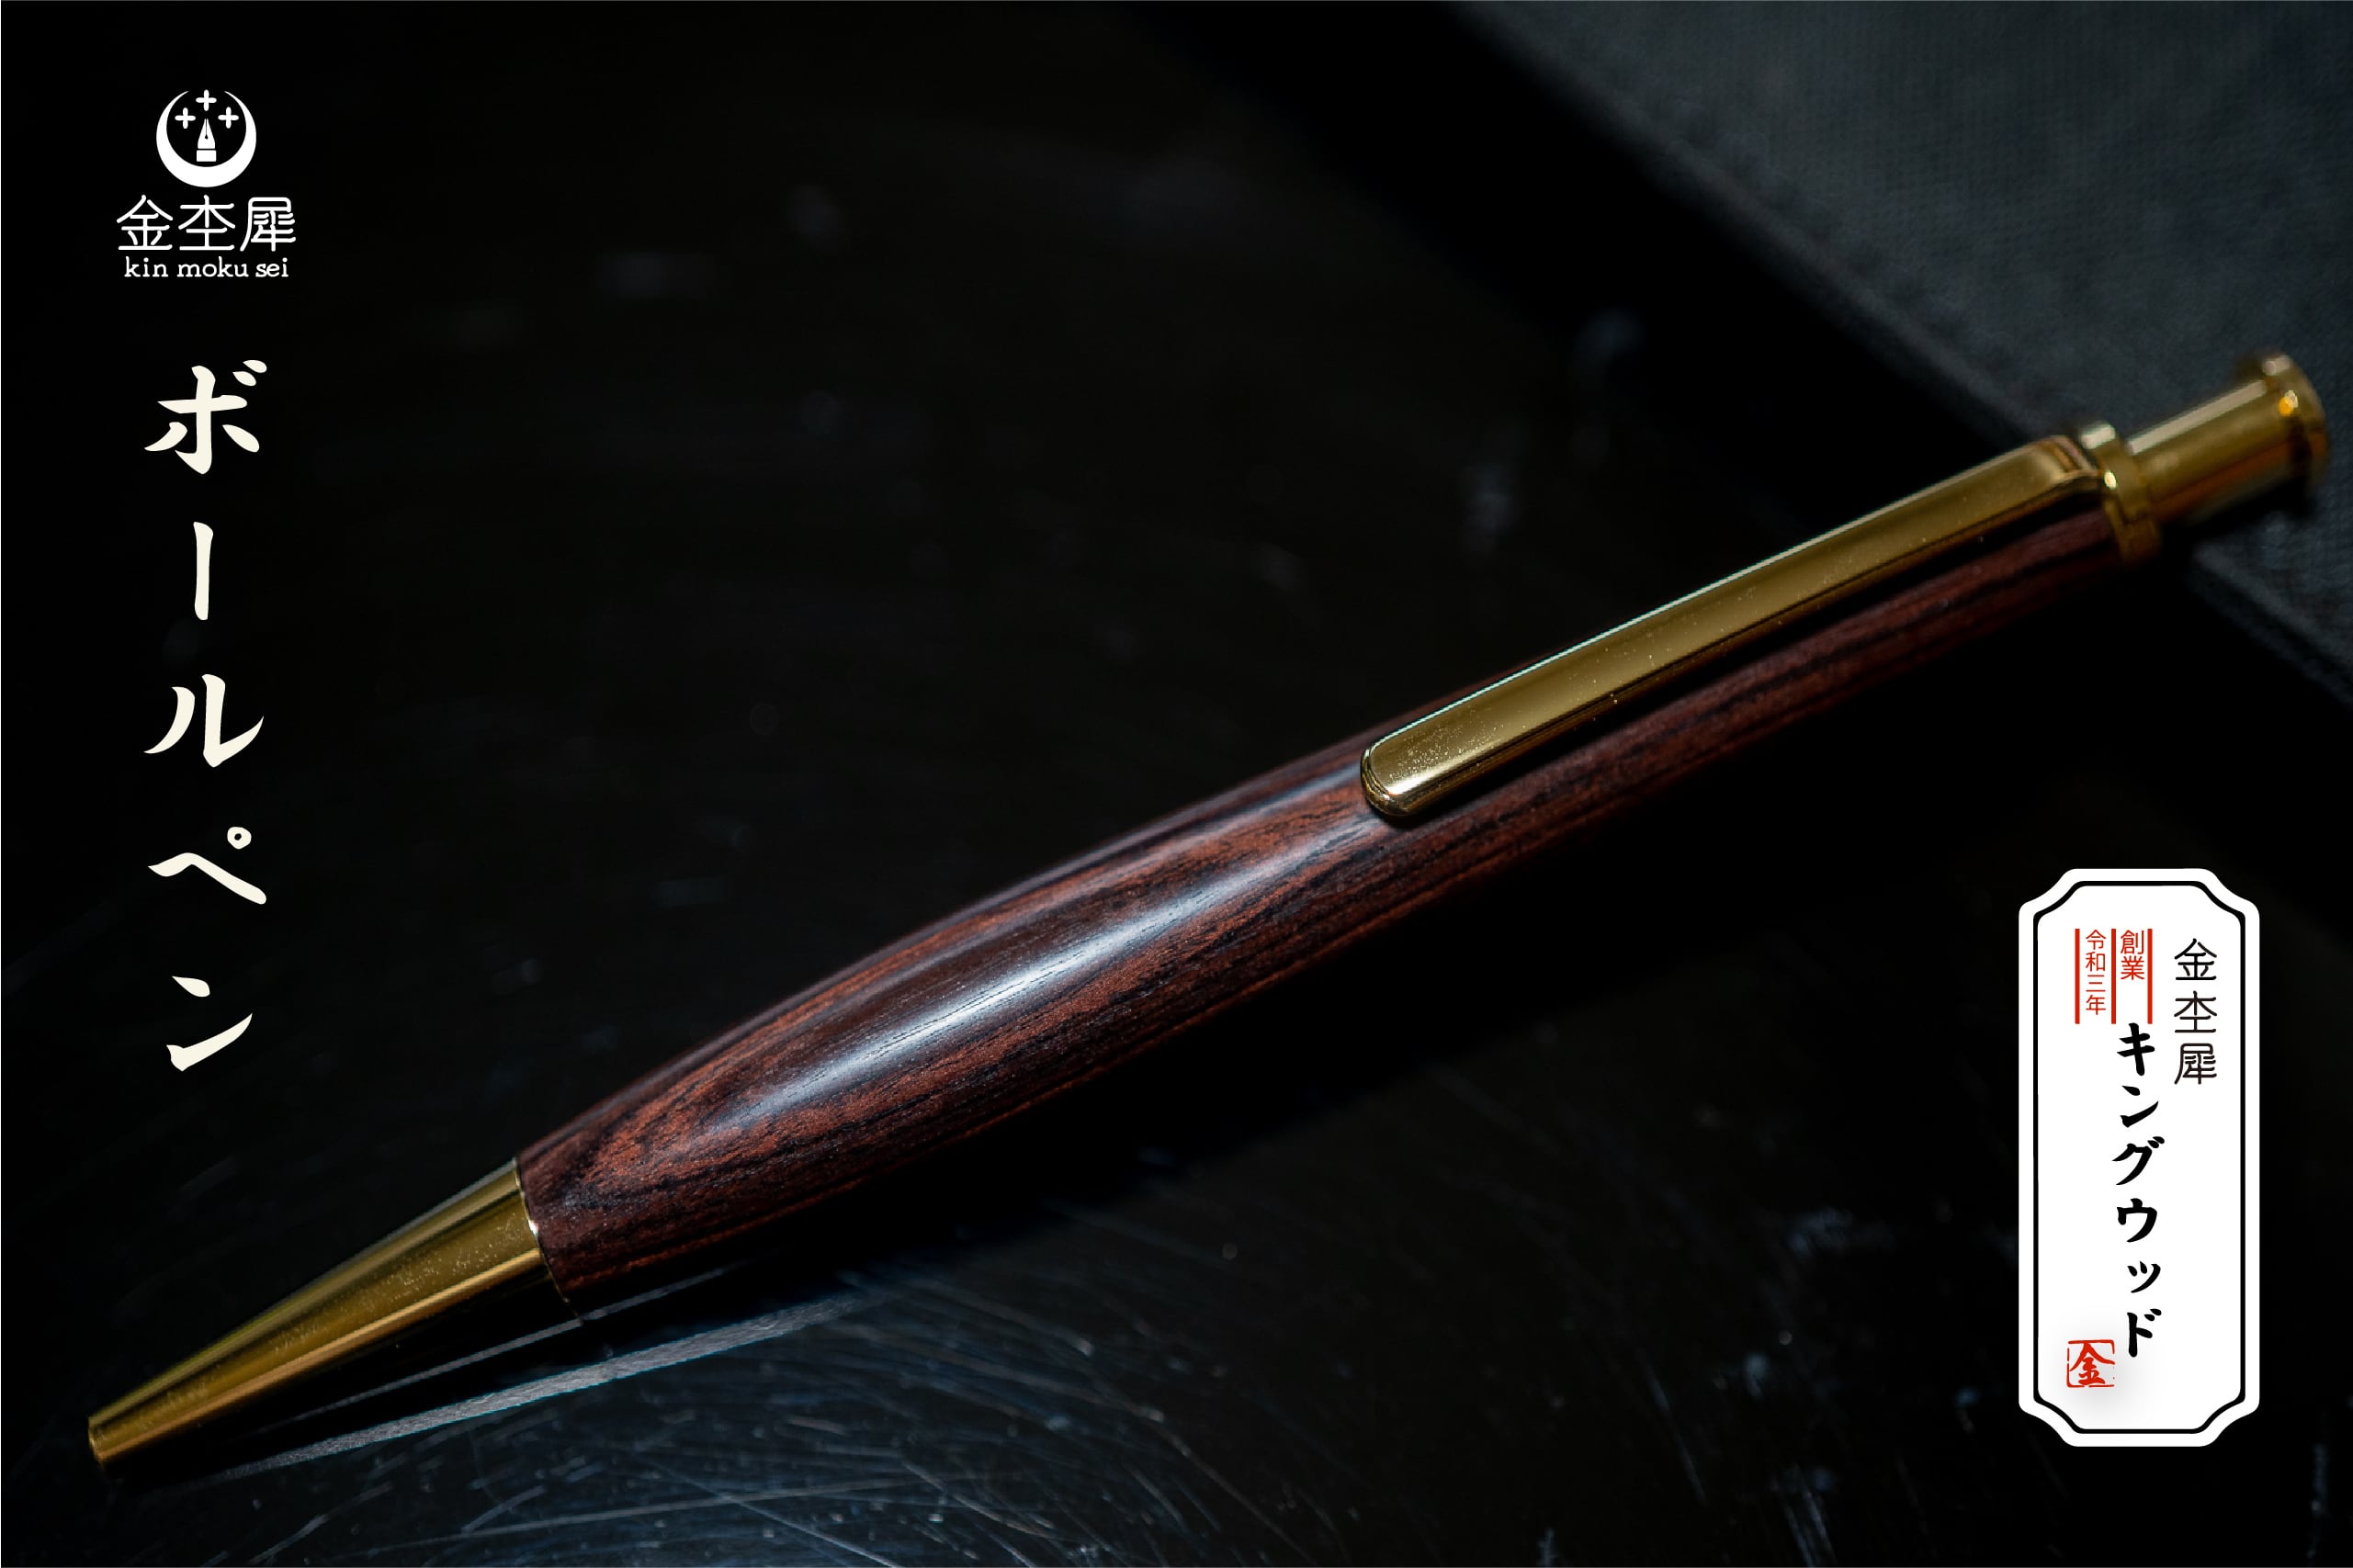 ボールペン | 木軸ペン工房 金杢犀